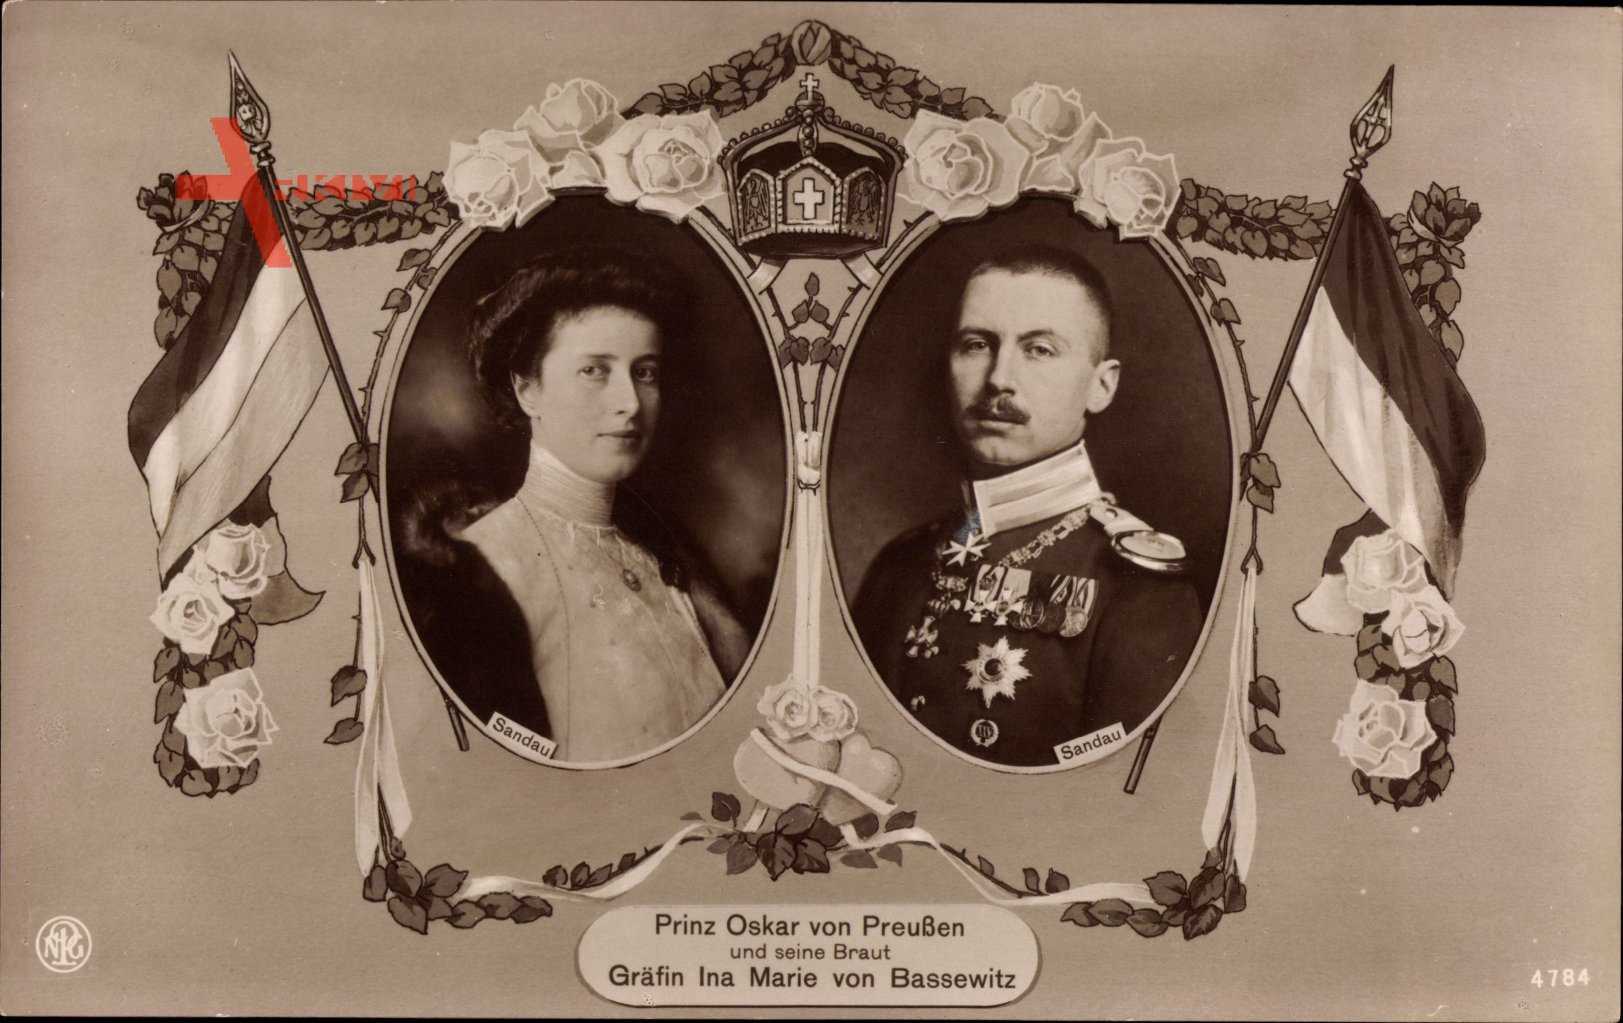 Oskar Prinz von Preussen, Gräfin Ina Marie von Bassewitz, NPG 4784